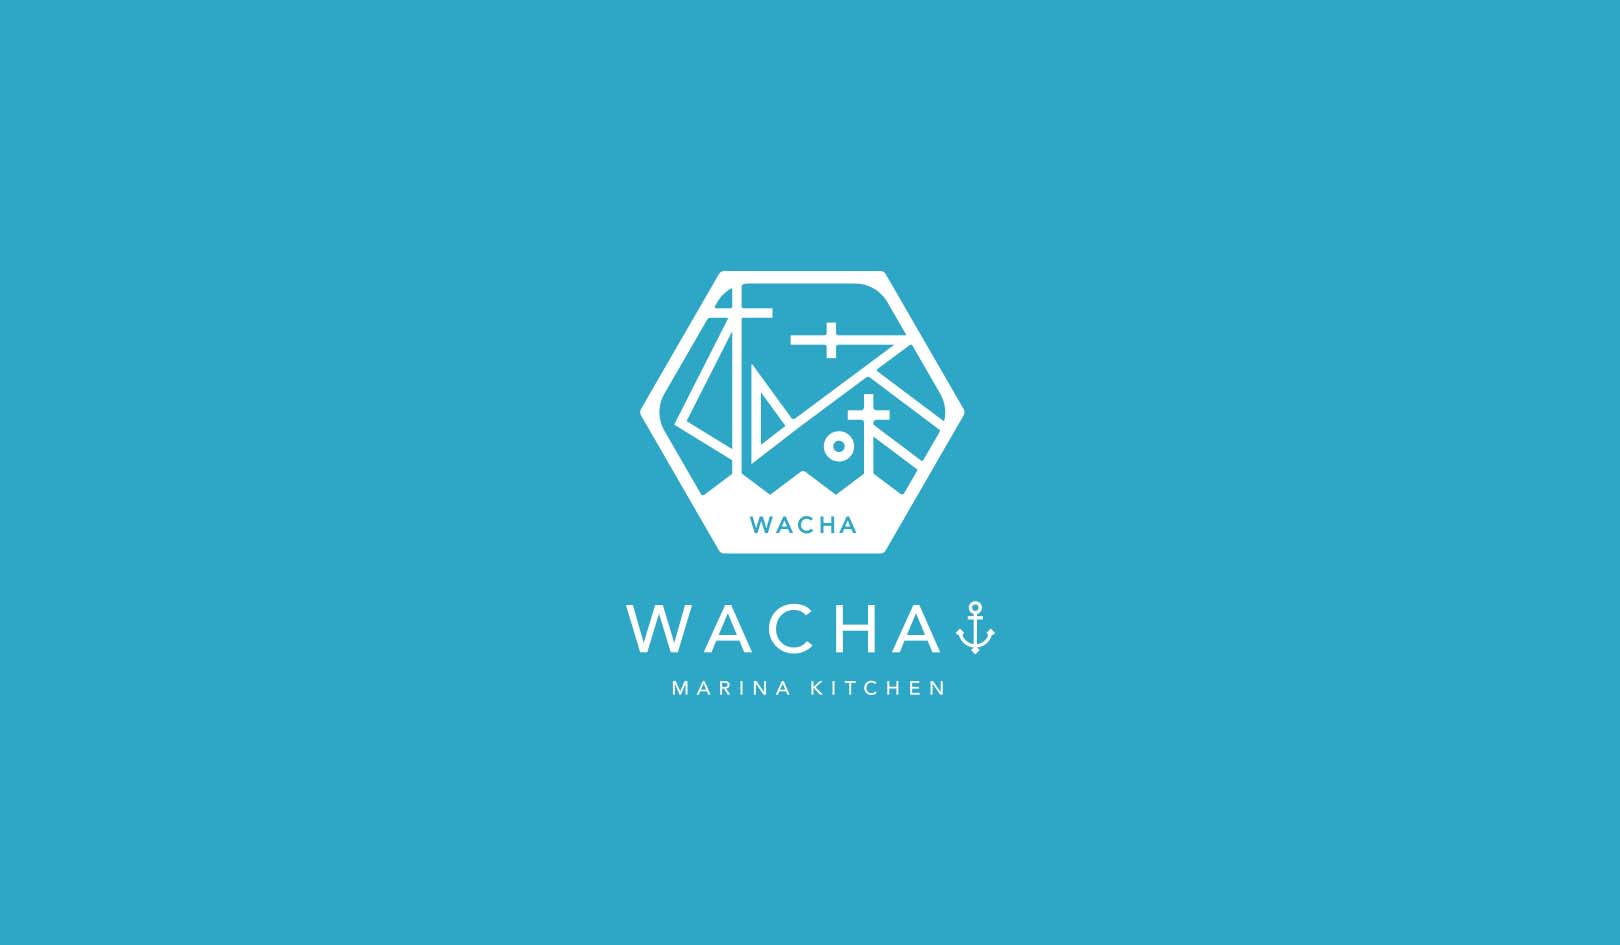 WACHA | 冬季施設点検による休業についてのお知らせ